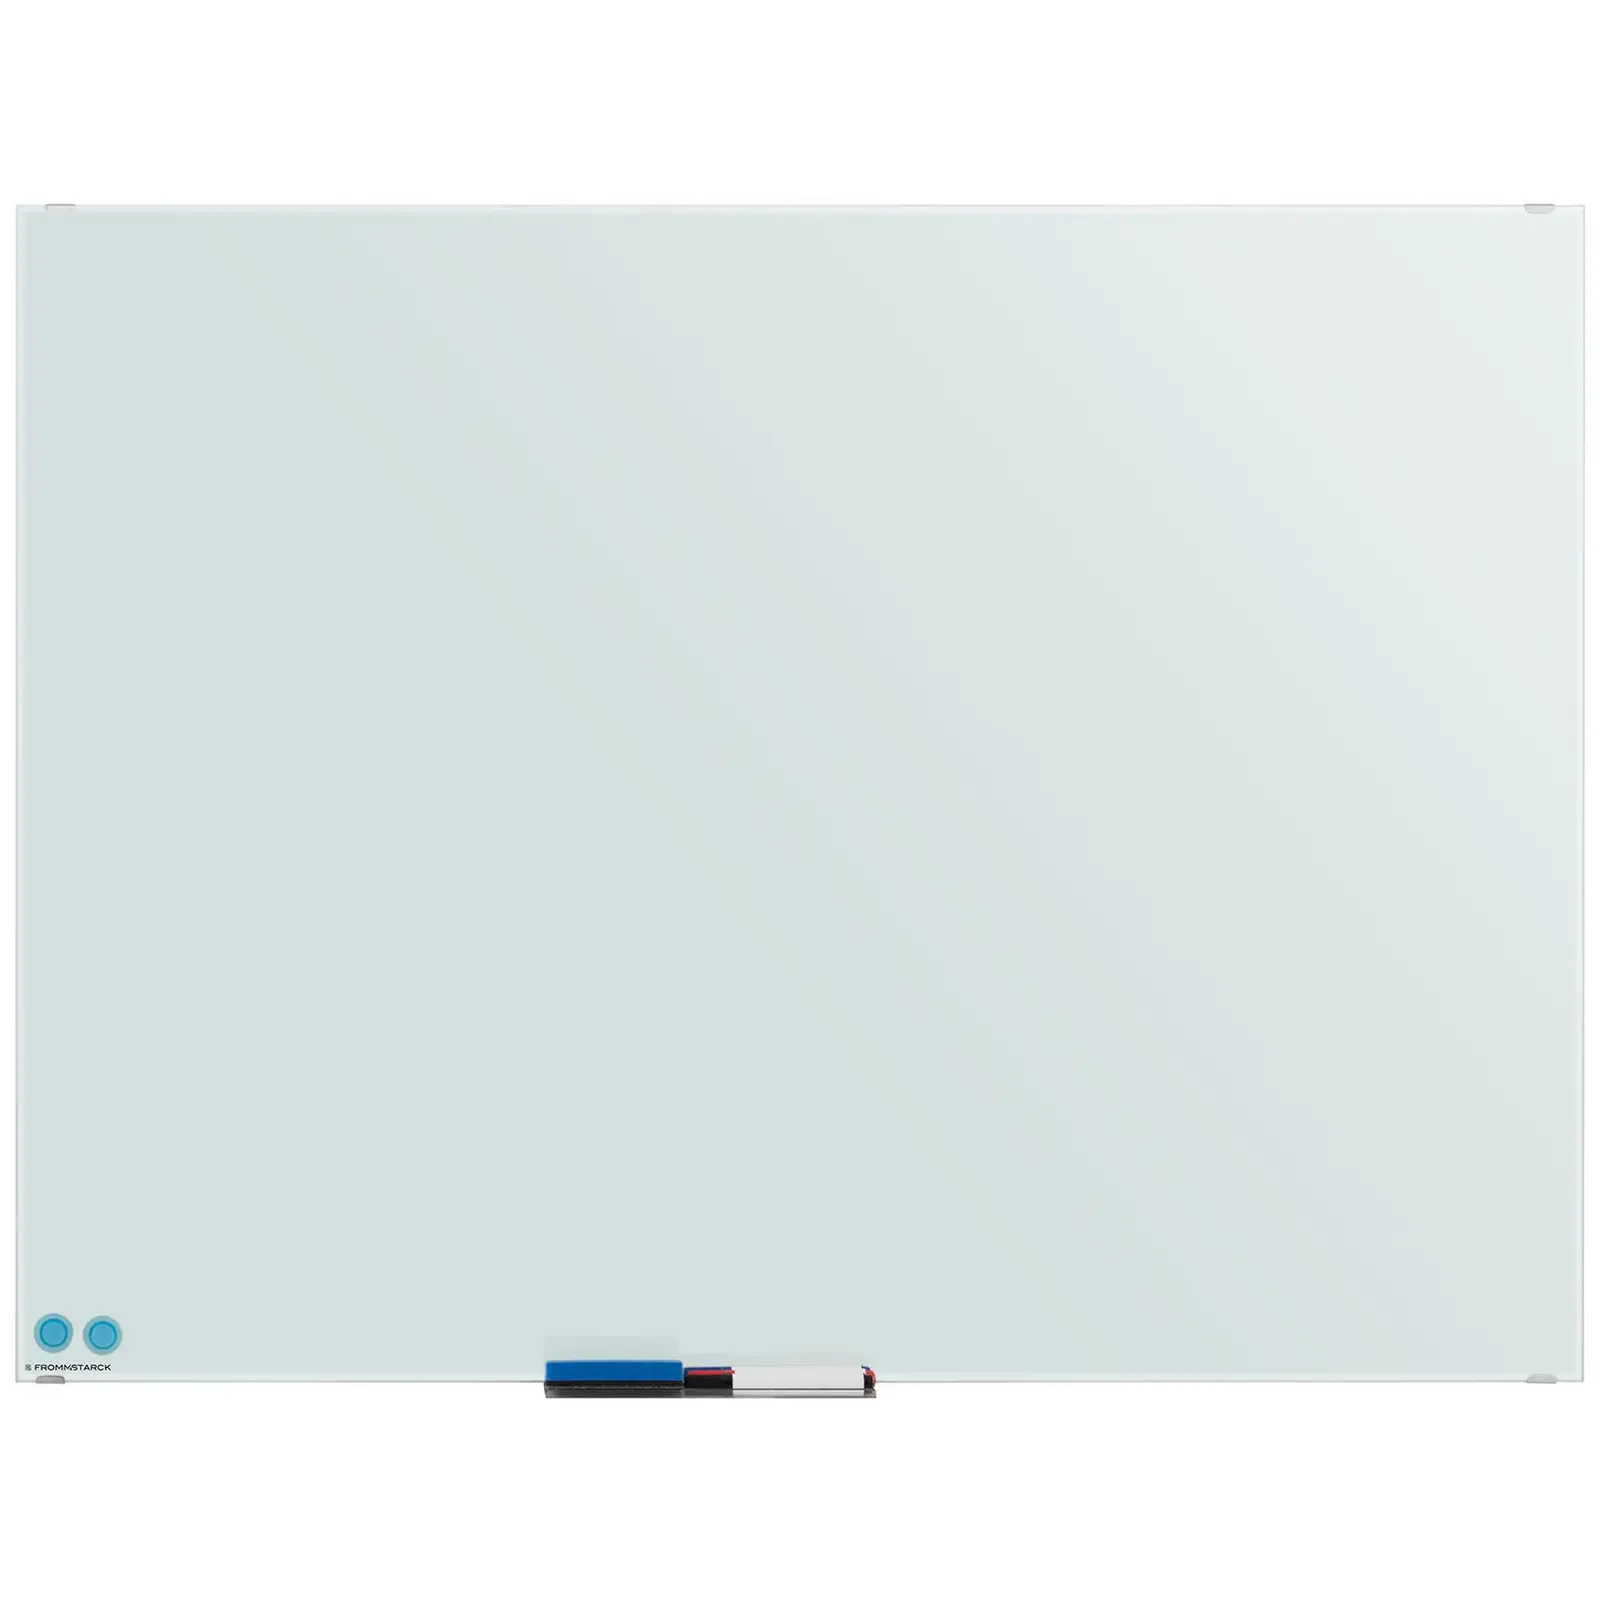 Occasion Tableau blanc magnétique - 90 x 120 x 0,4 cm